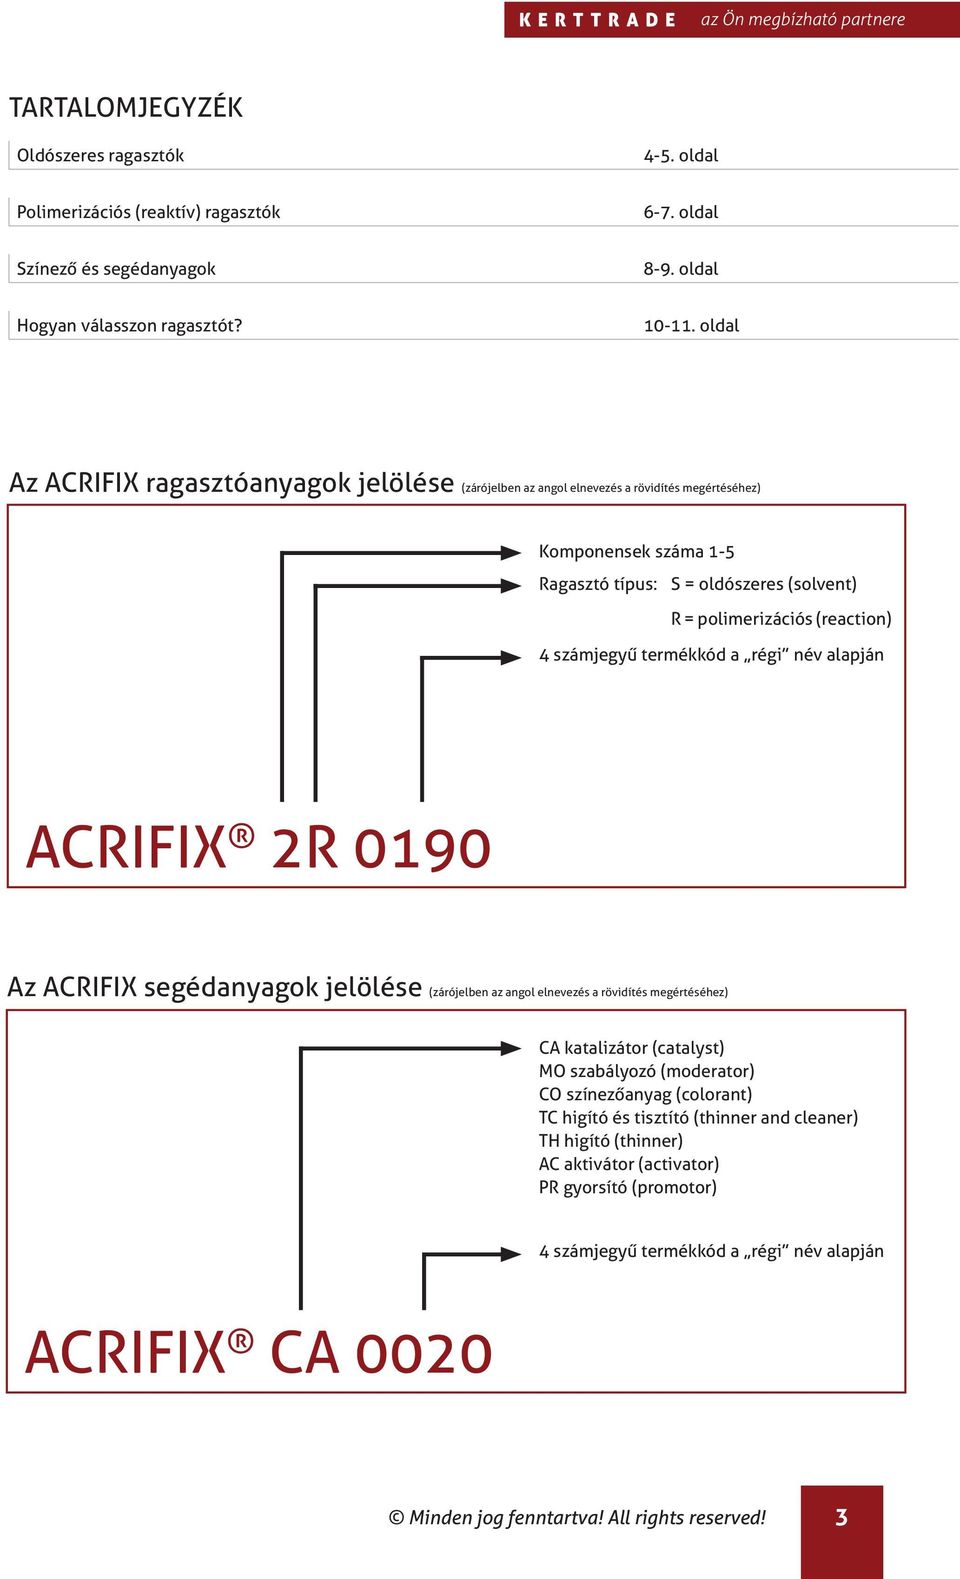 ACRIFIX - ragasztók és segédanyagok - PDF Ingyenes letöltés